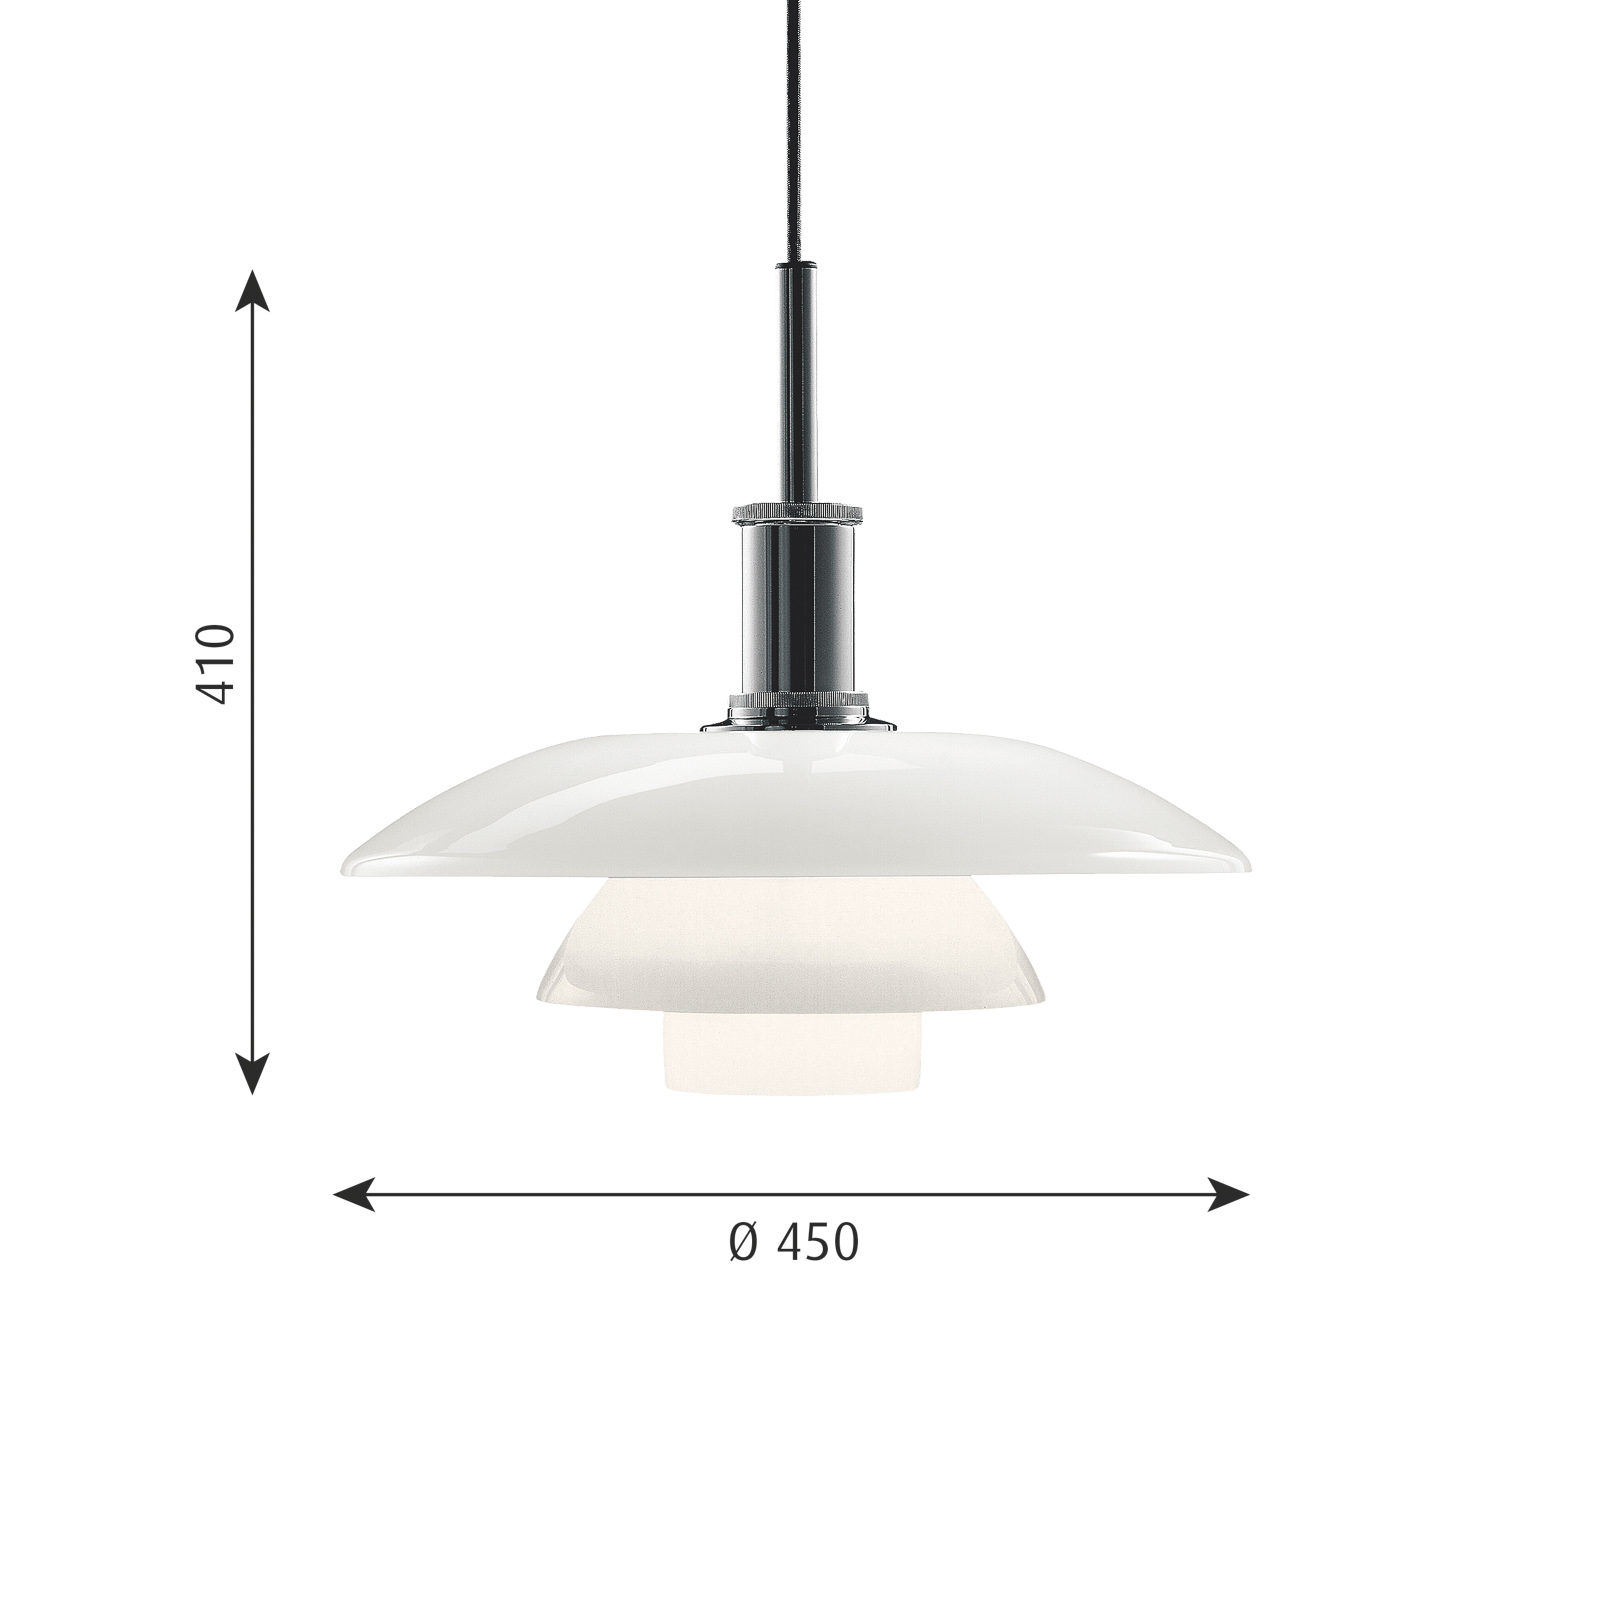 Louis Poulsen PH 4 1/2-4 hanglamp